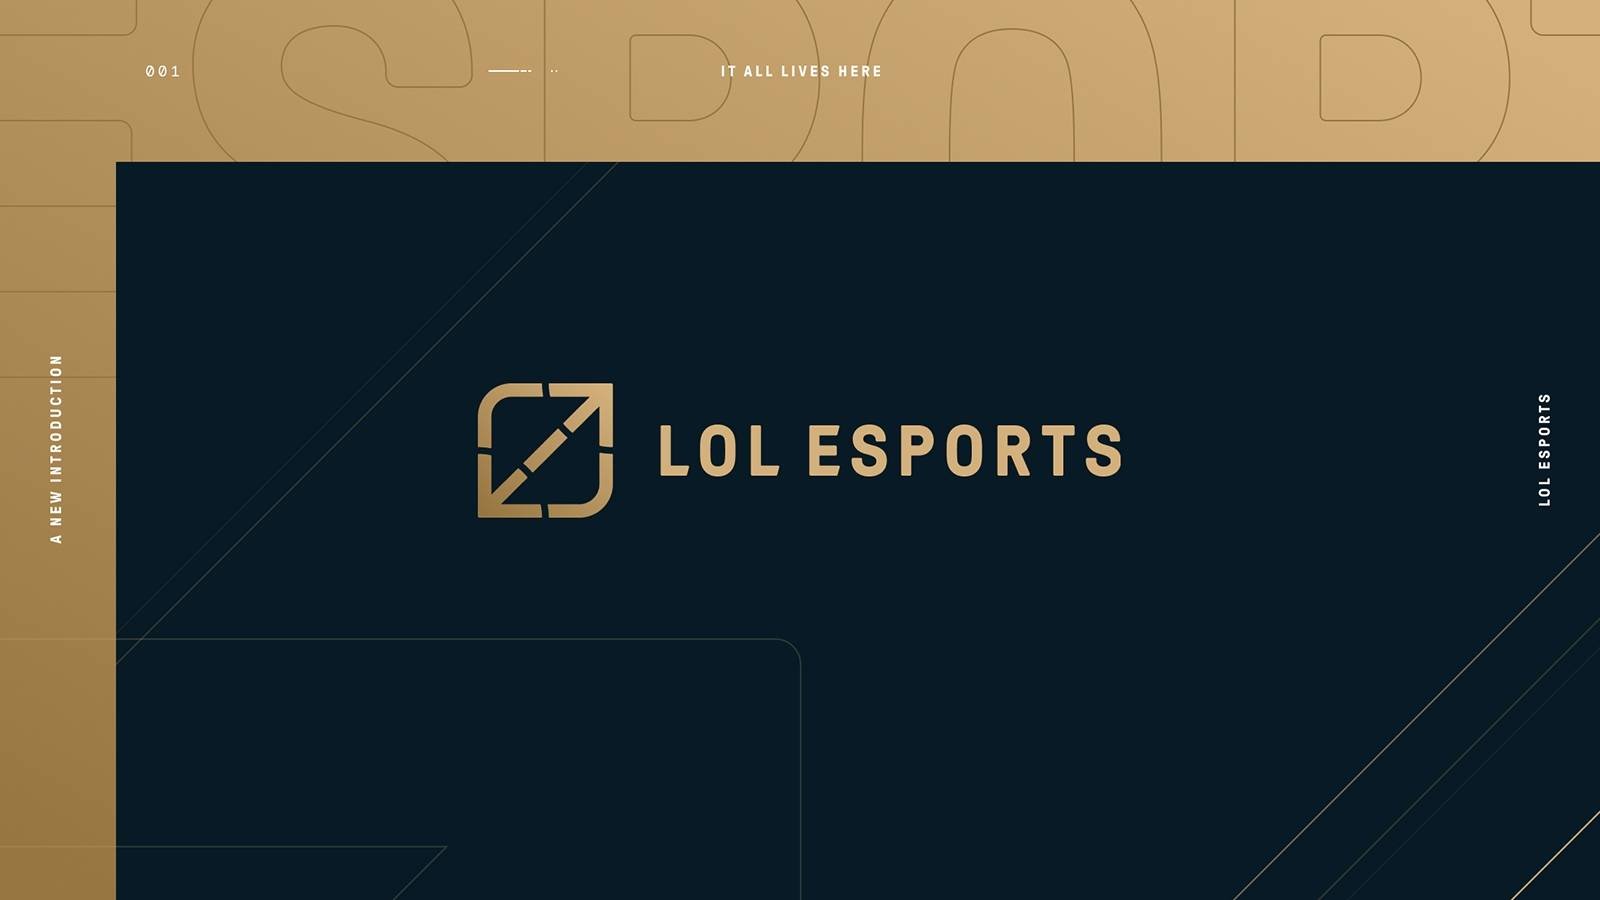 Immagine di League of Legends, ecco il nuovo marchio LoL Esports